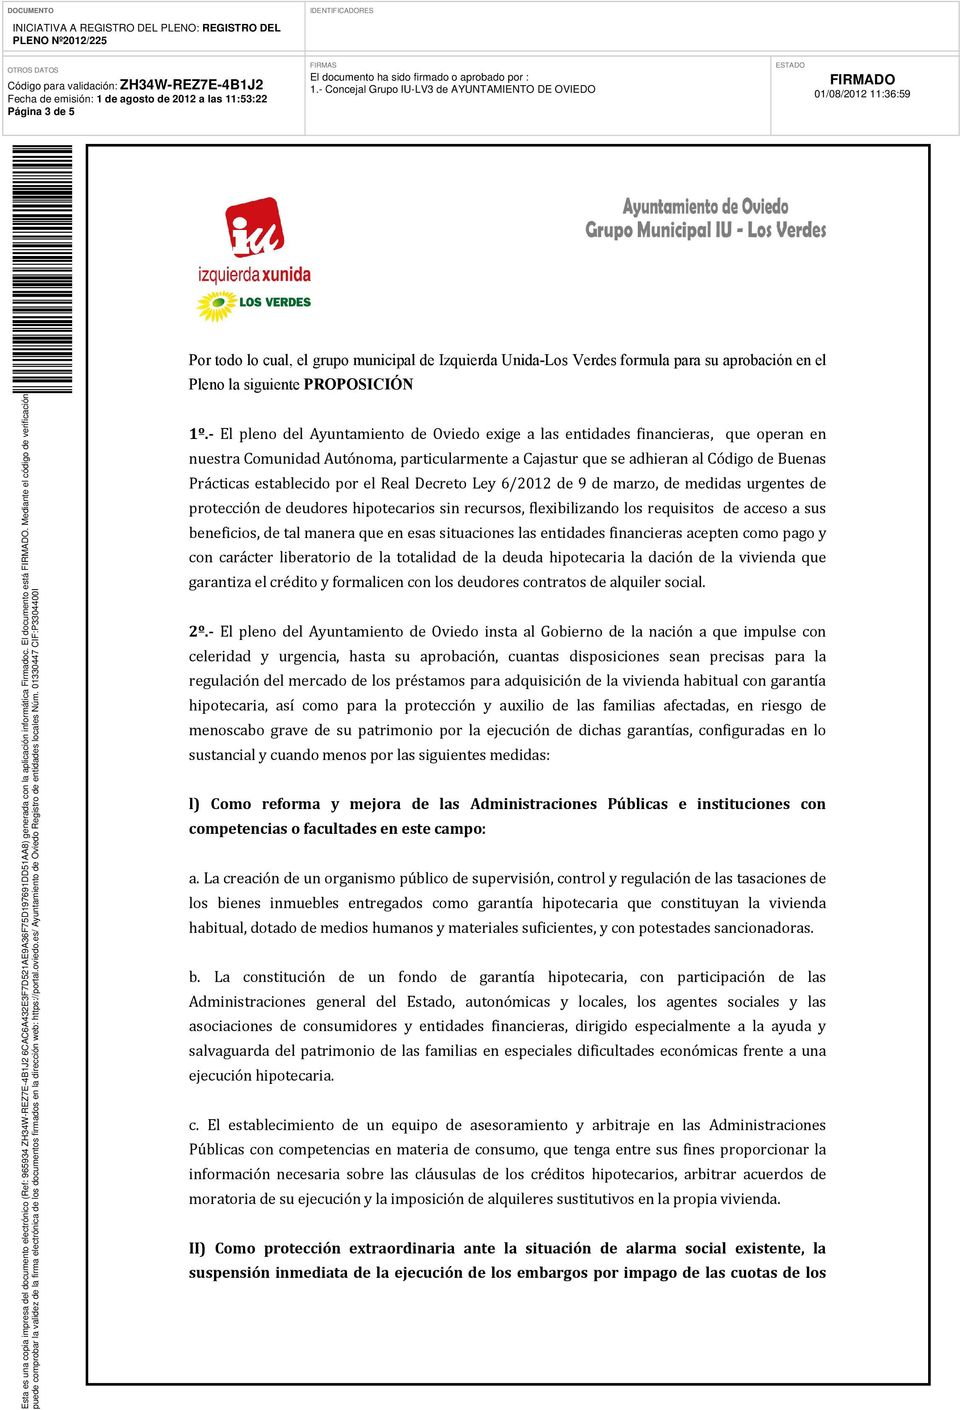 - El pleno del Ayuntamiento de Oviedo exige a las entidades financieras, que operan en nuestra Comunidad Autónoma, particularmente a Cajastur que se adhieran al Código de Buenas Prácticas establecido